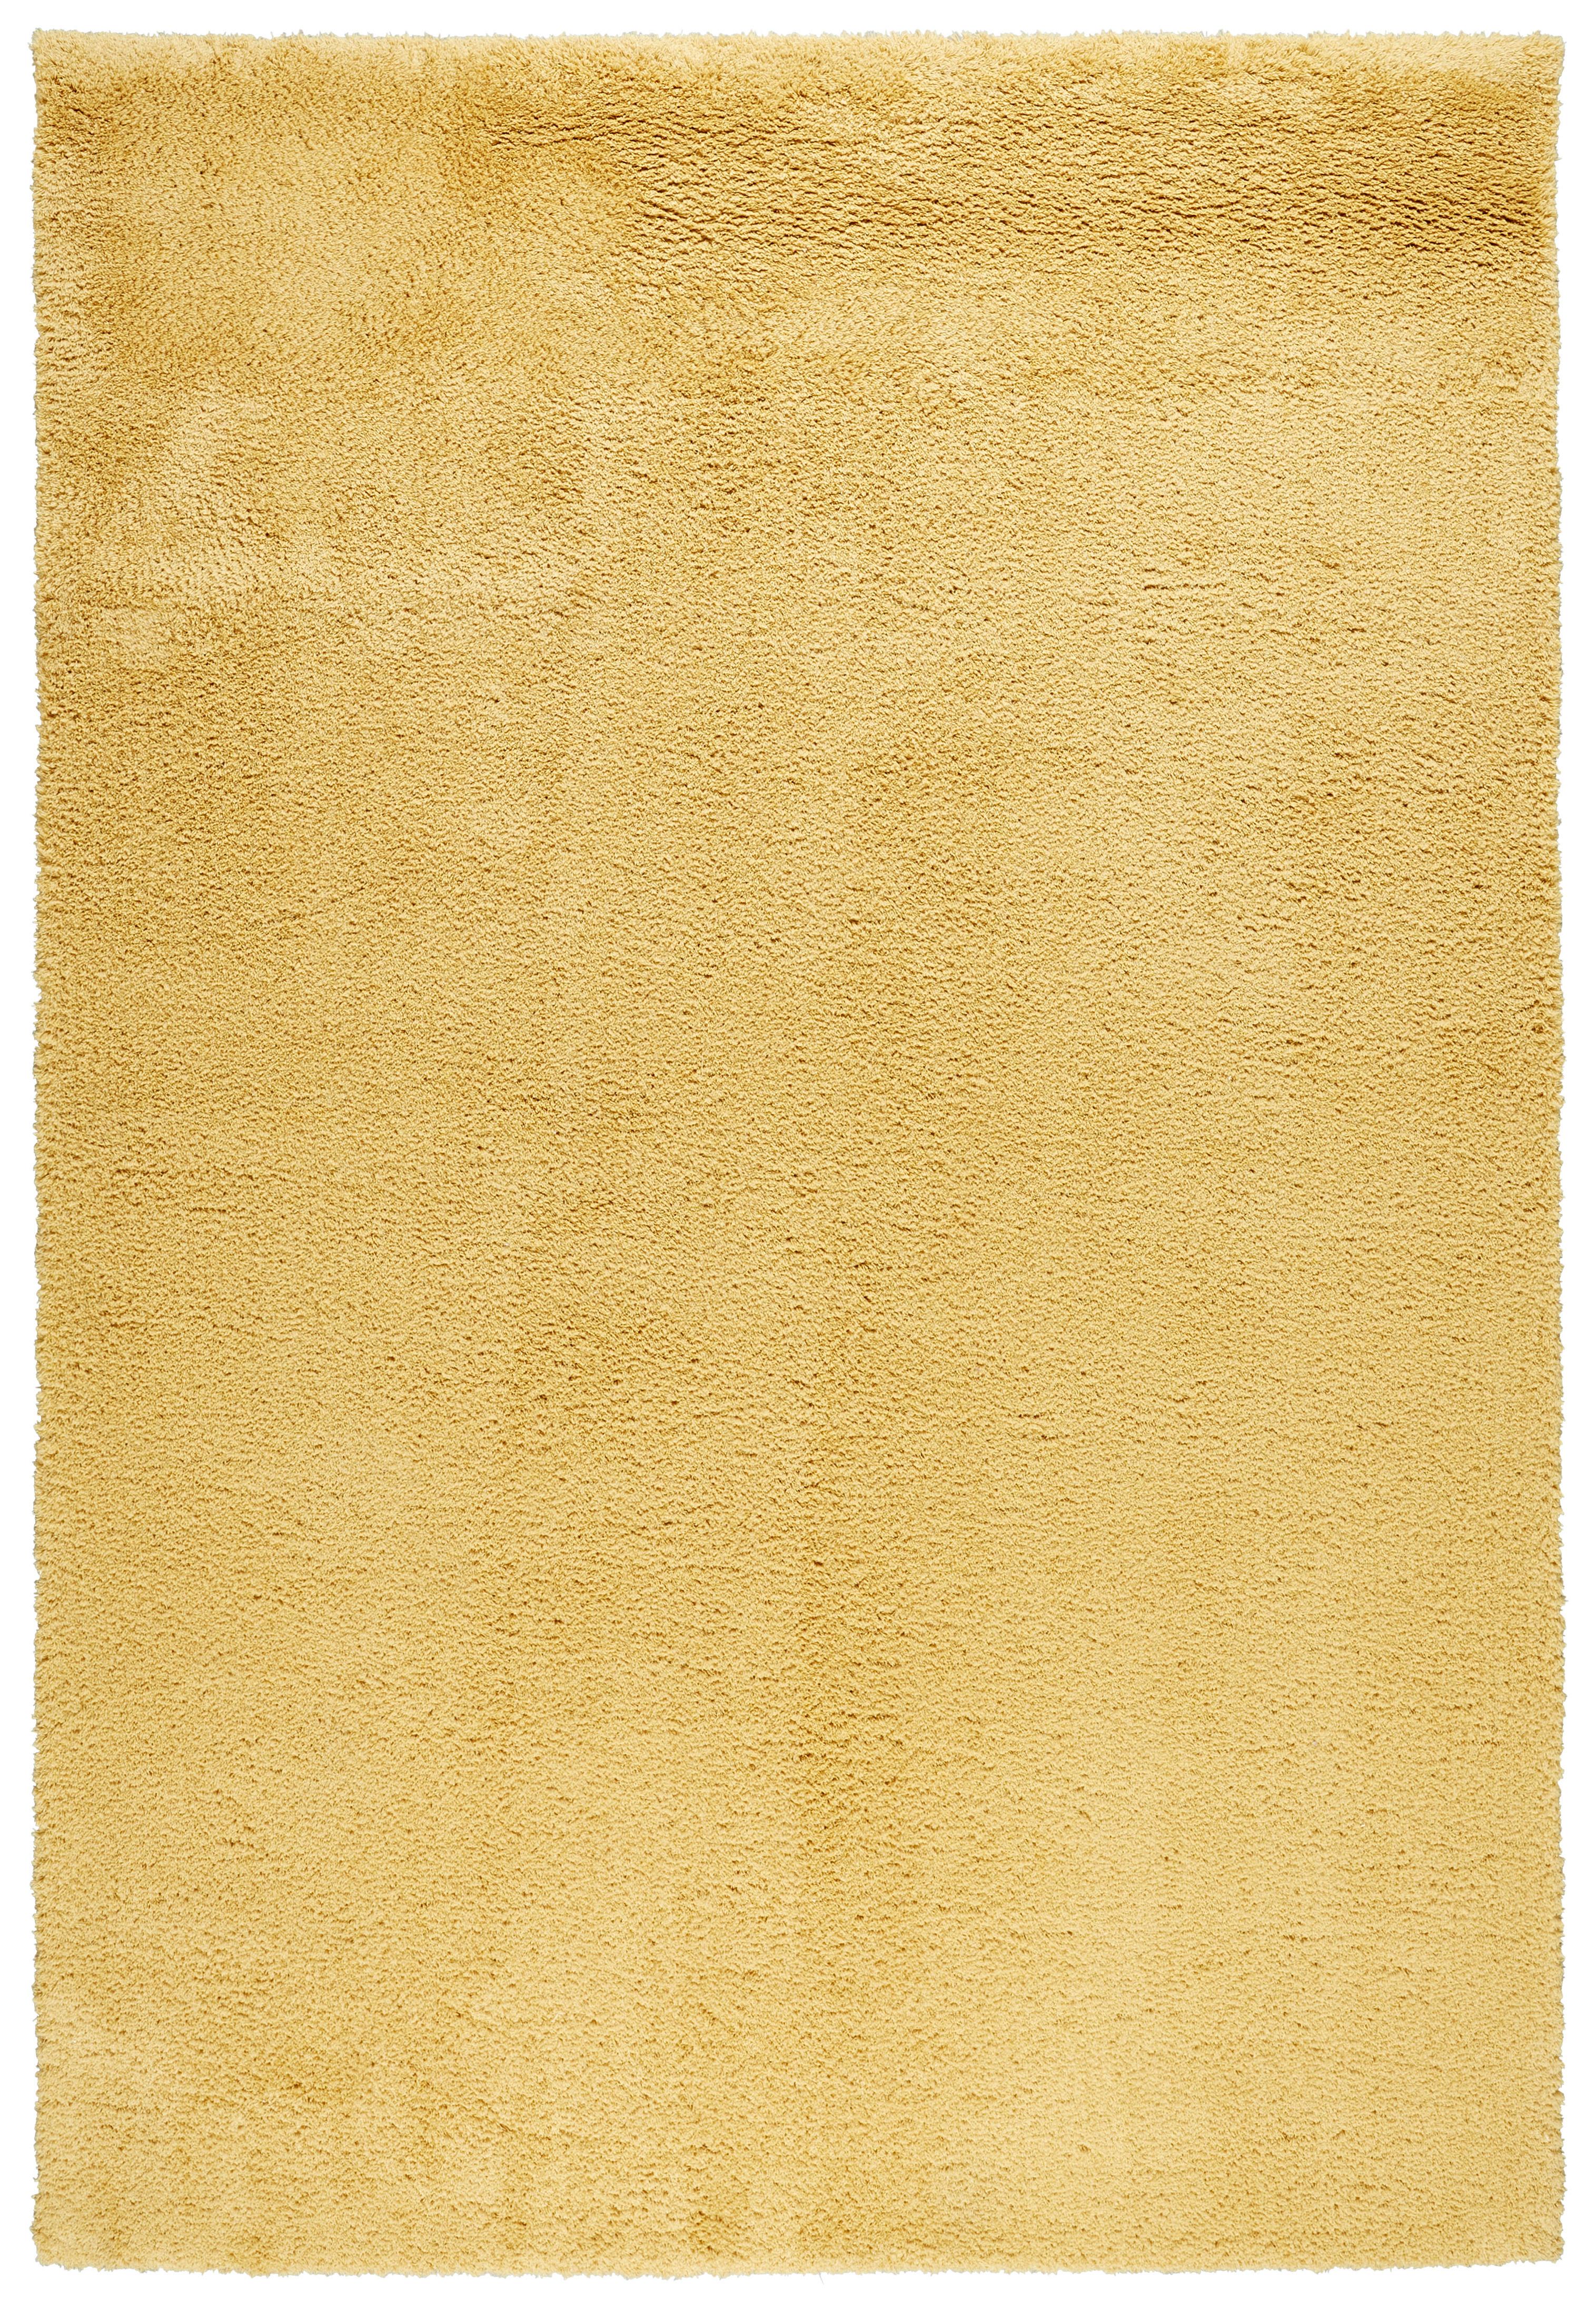 Čupavac Stefan 1 - žuta, Modern, tekstil (80/150cm) - Modern Living